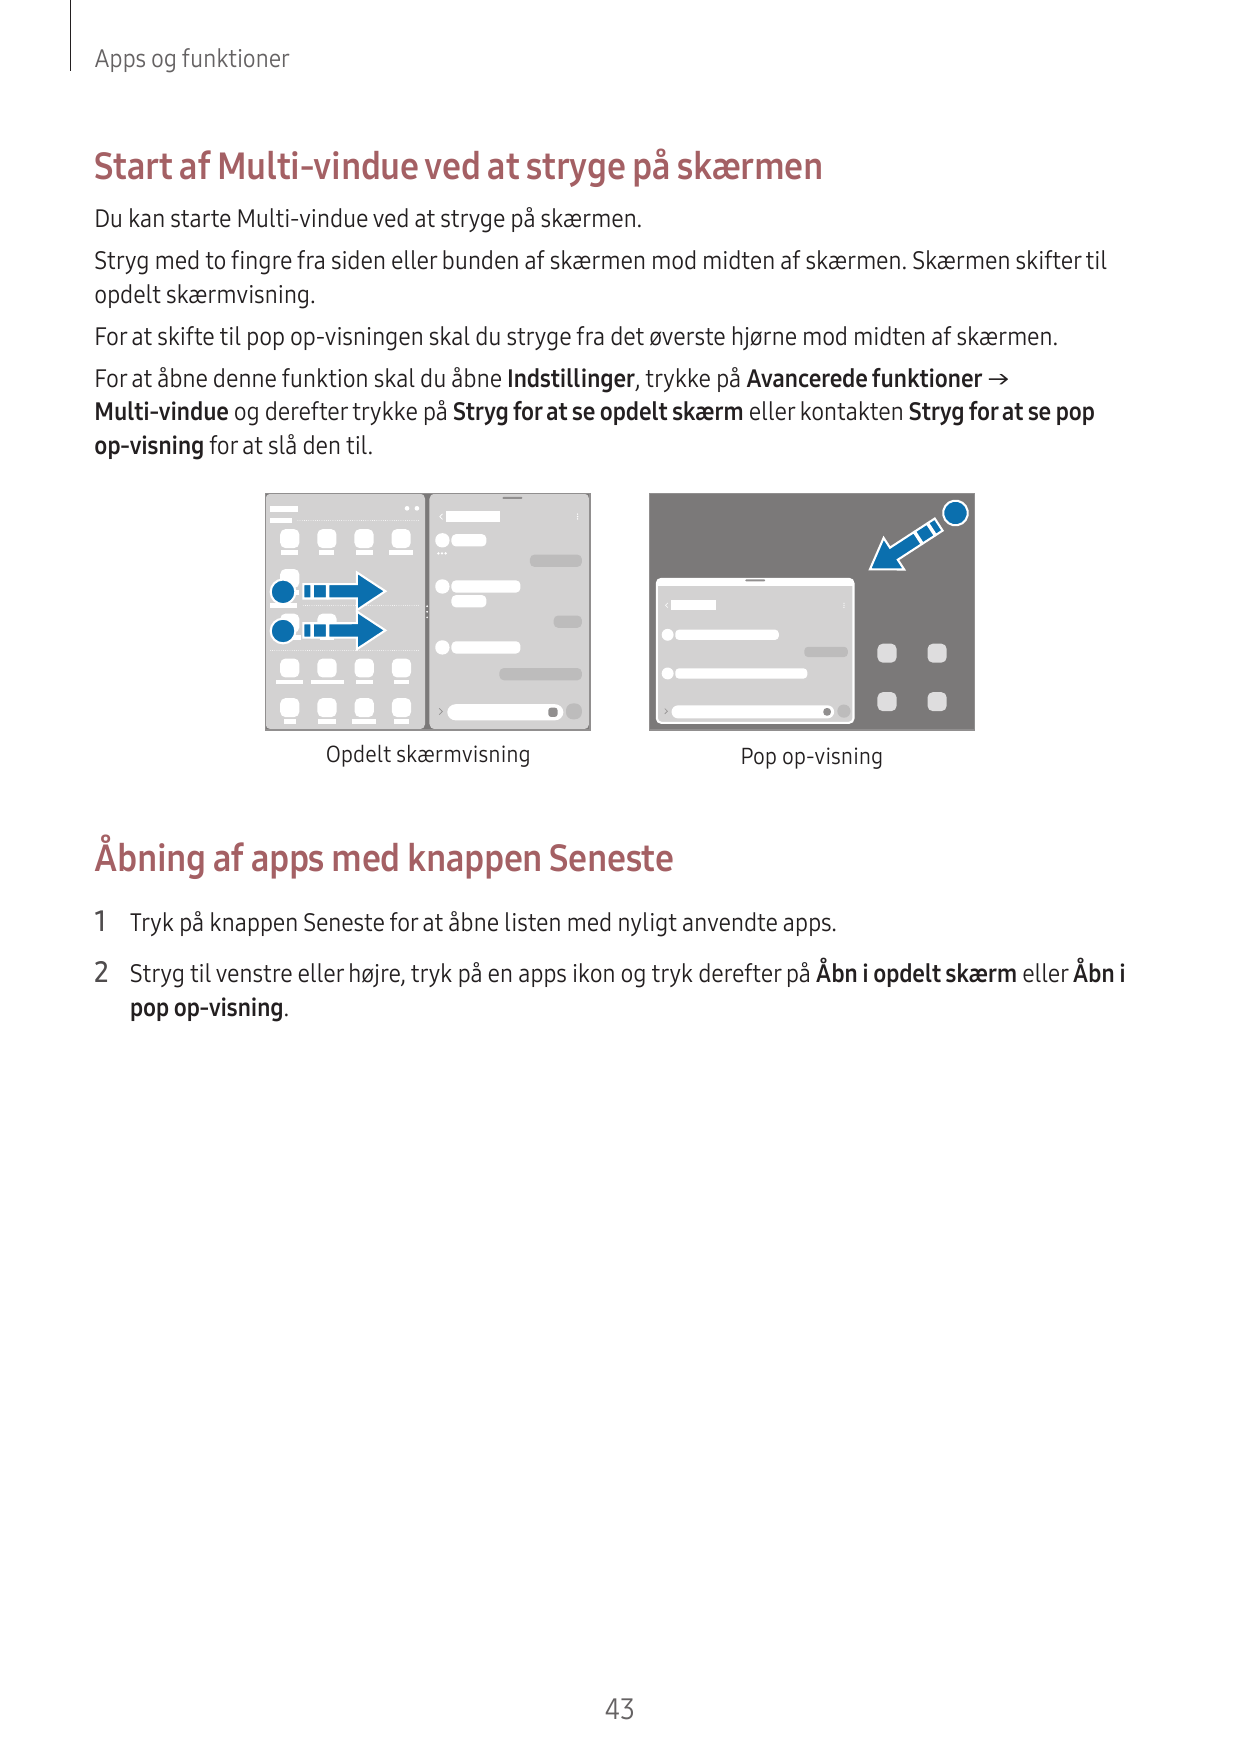 Apps og funktionerStart af Multi-vindue ved at stryge på skærmenDu kan starte Multi-vindue ved at stryge på skærmen.Stryg med to